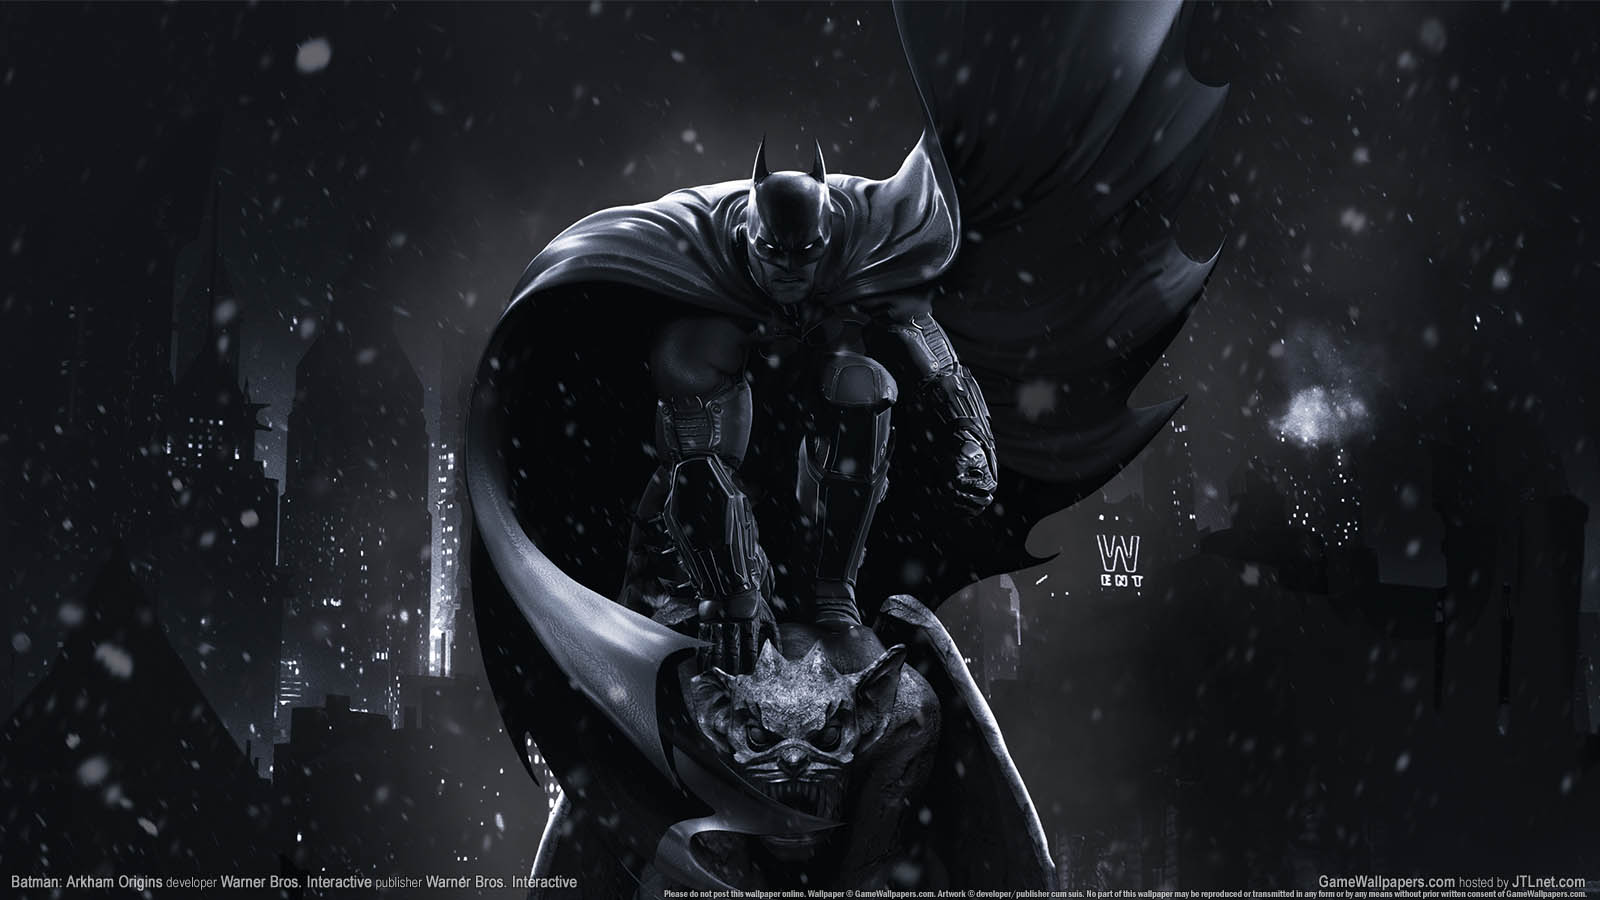 Batman: Arkham Origins fond d'cran 03 1600x900